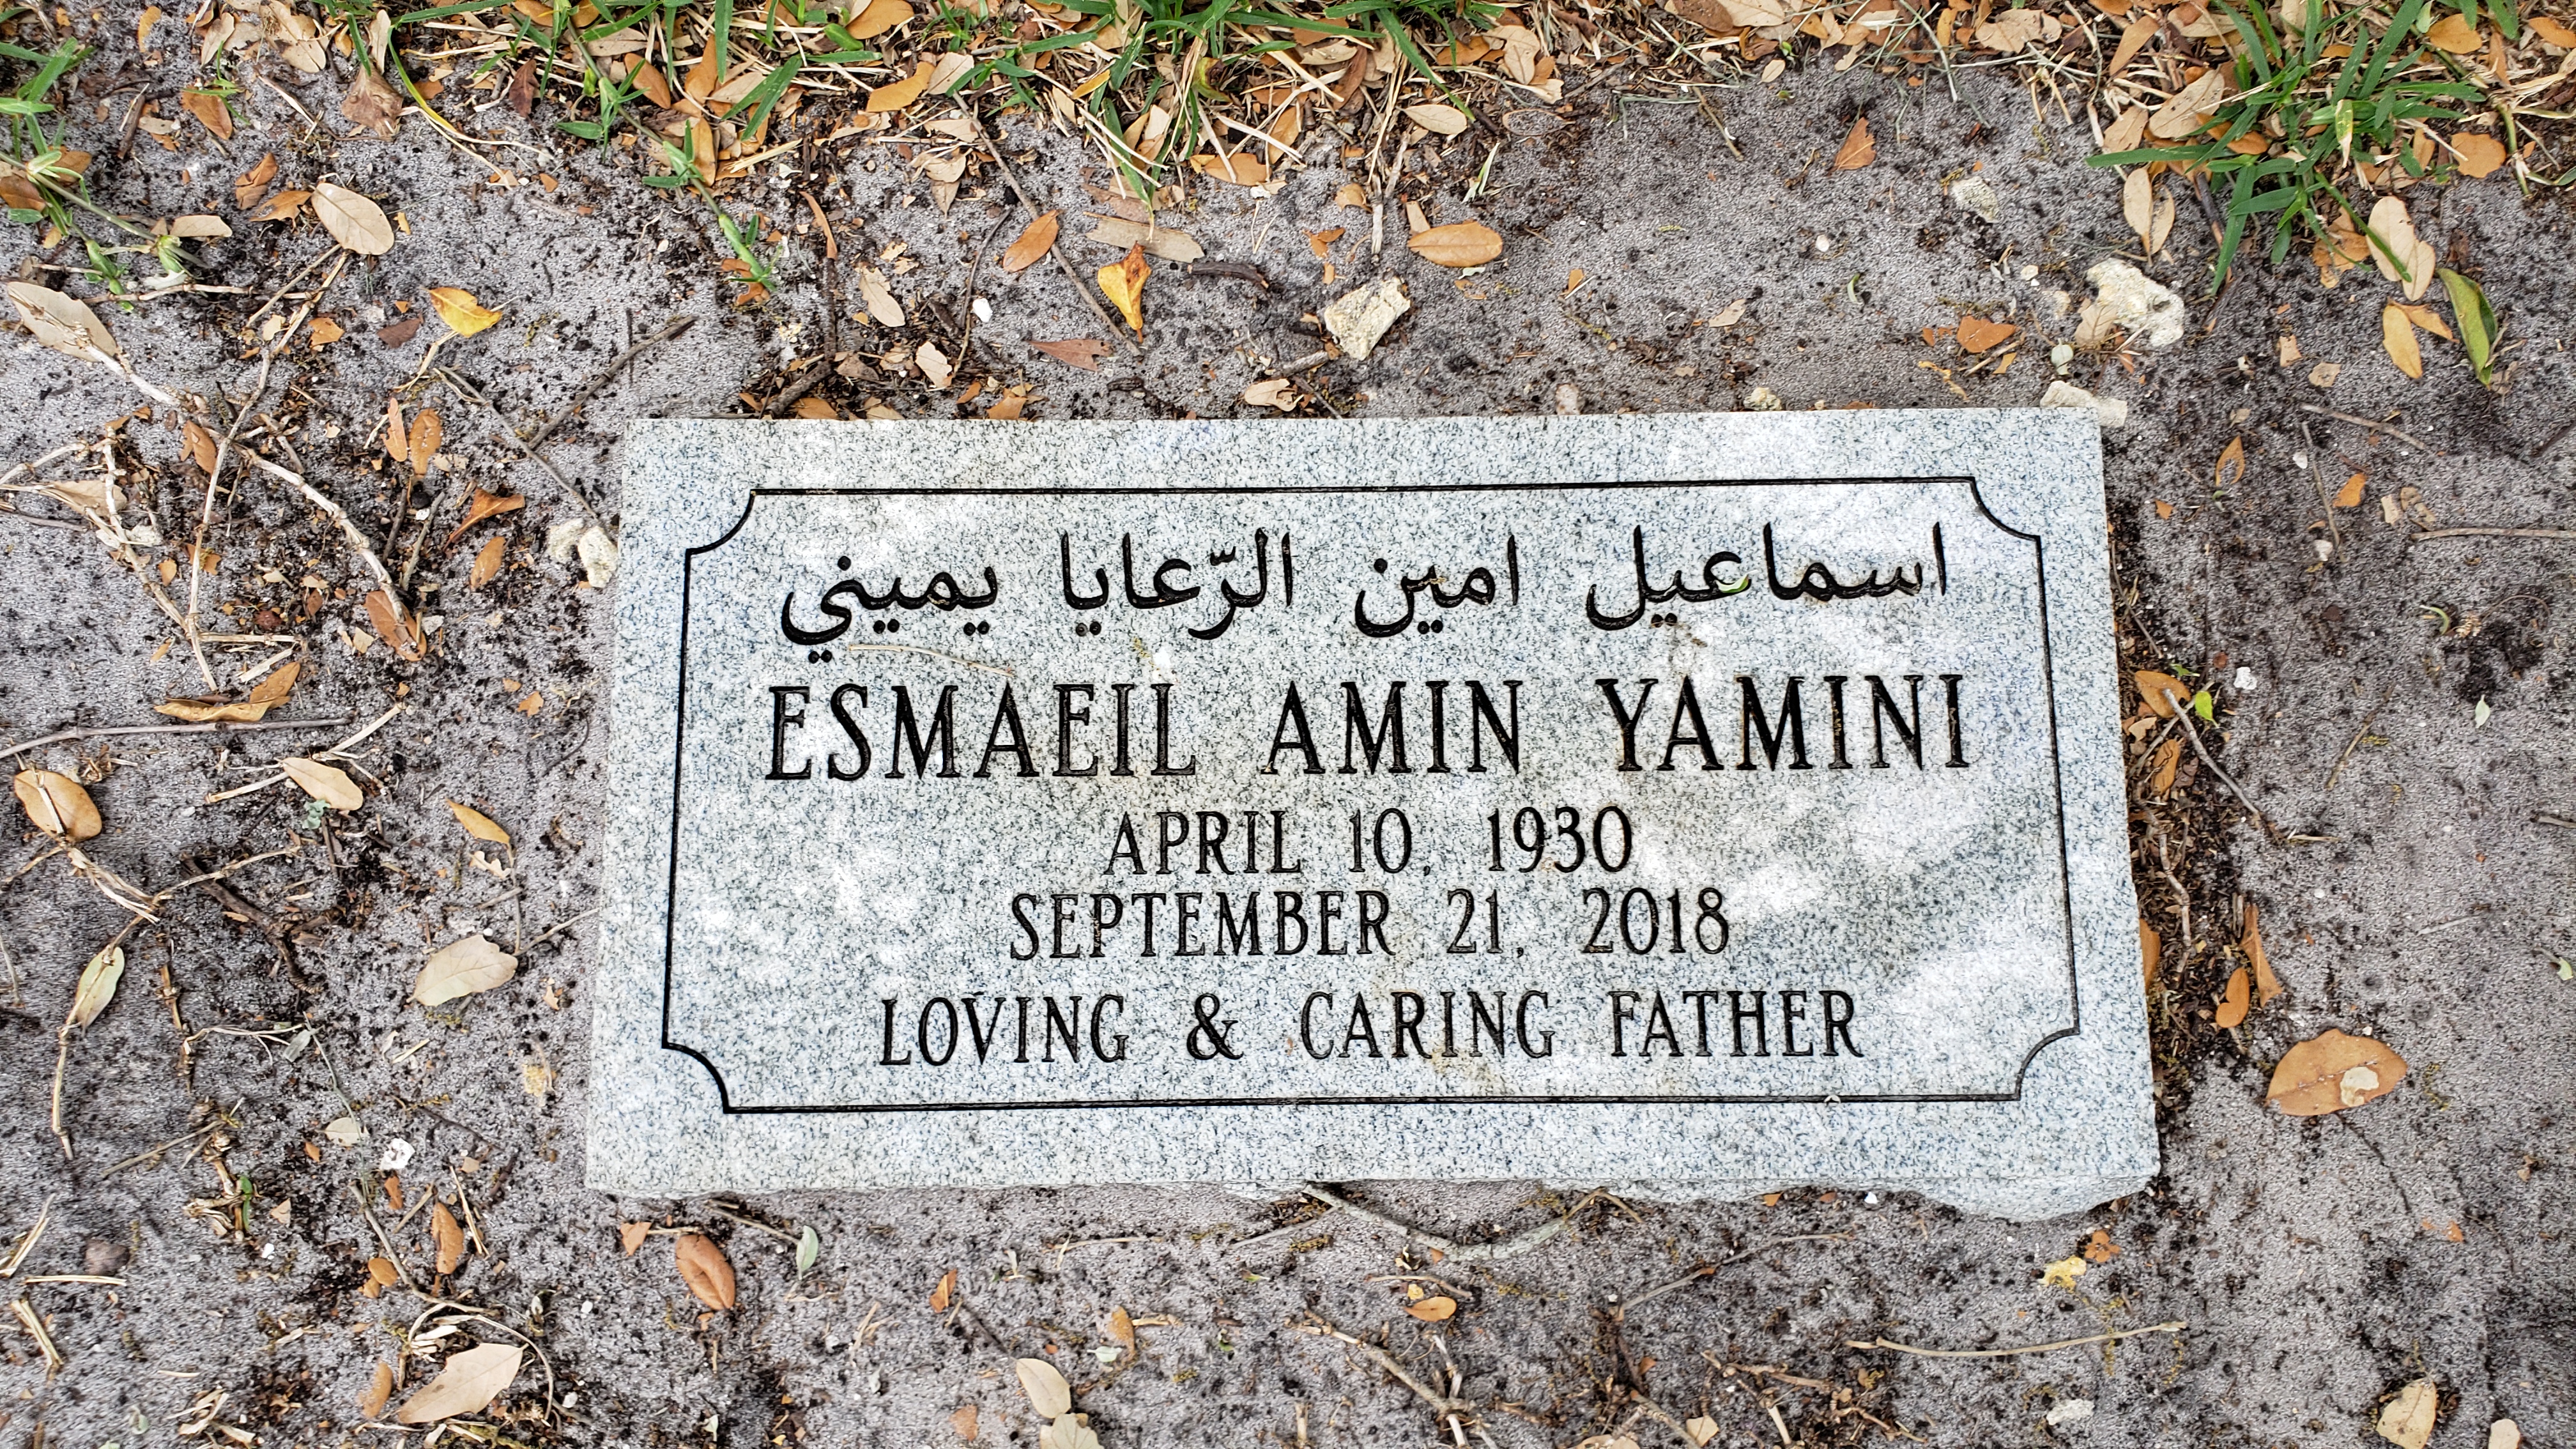 Esmaeil Amin Yamini